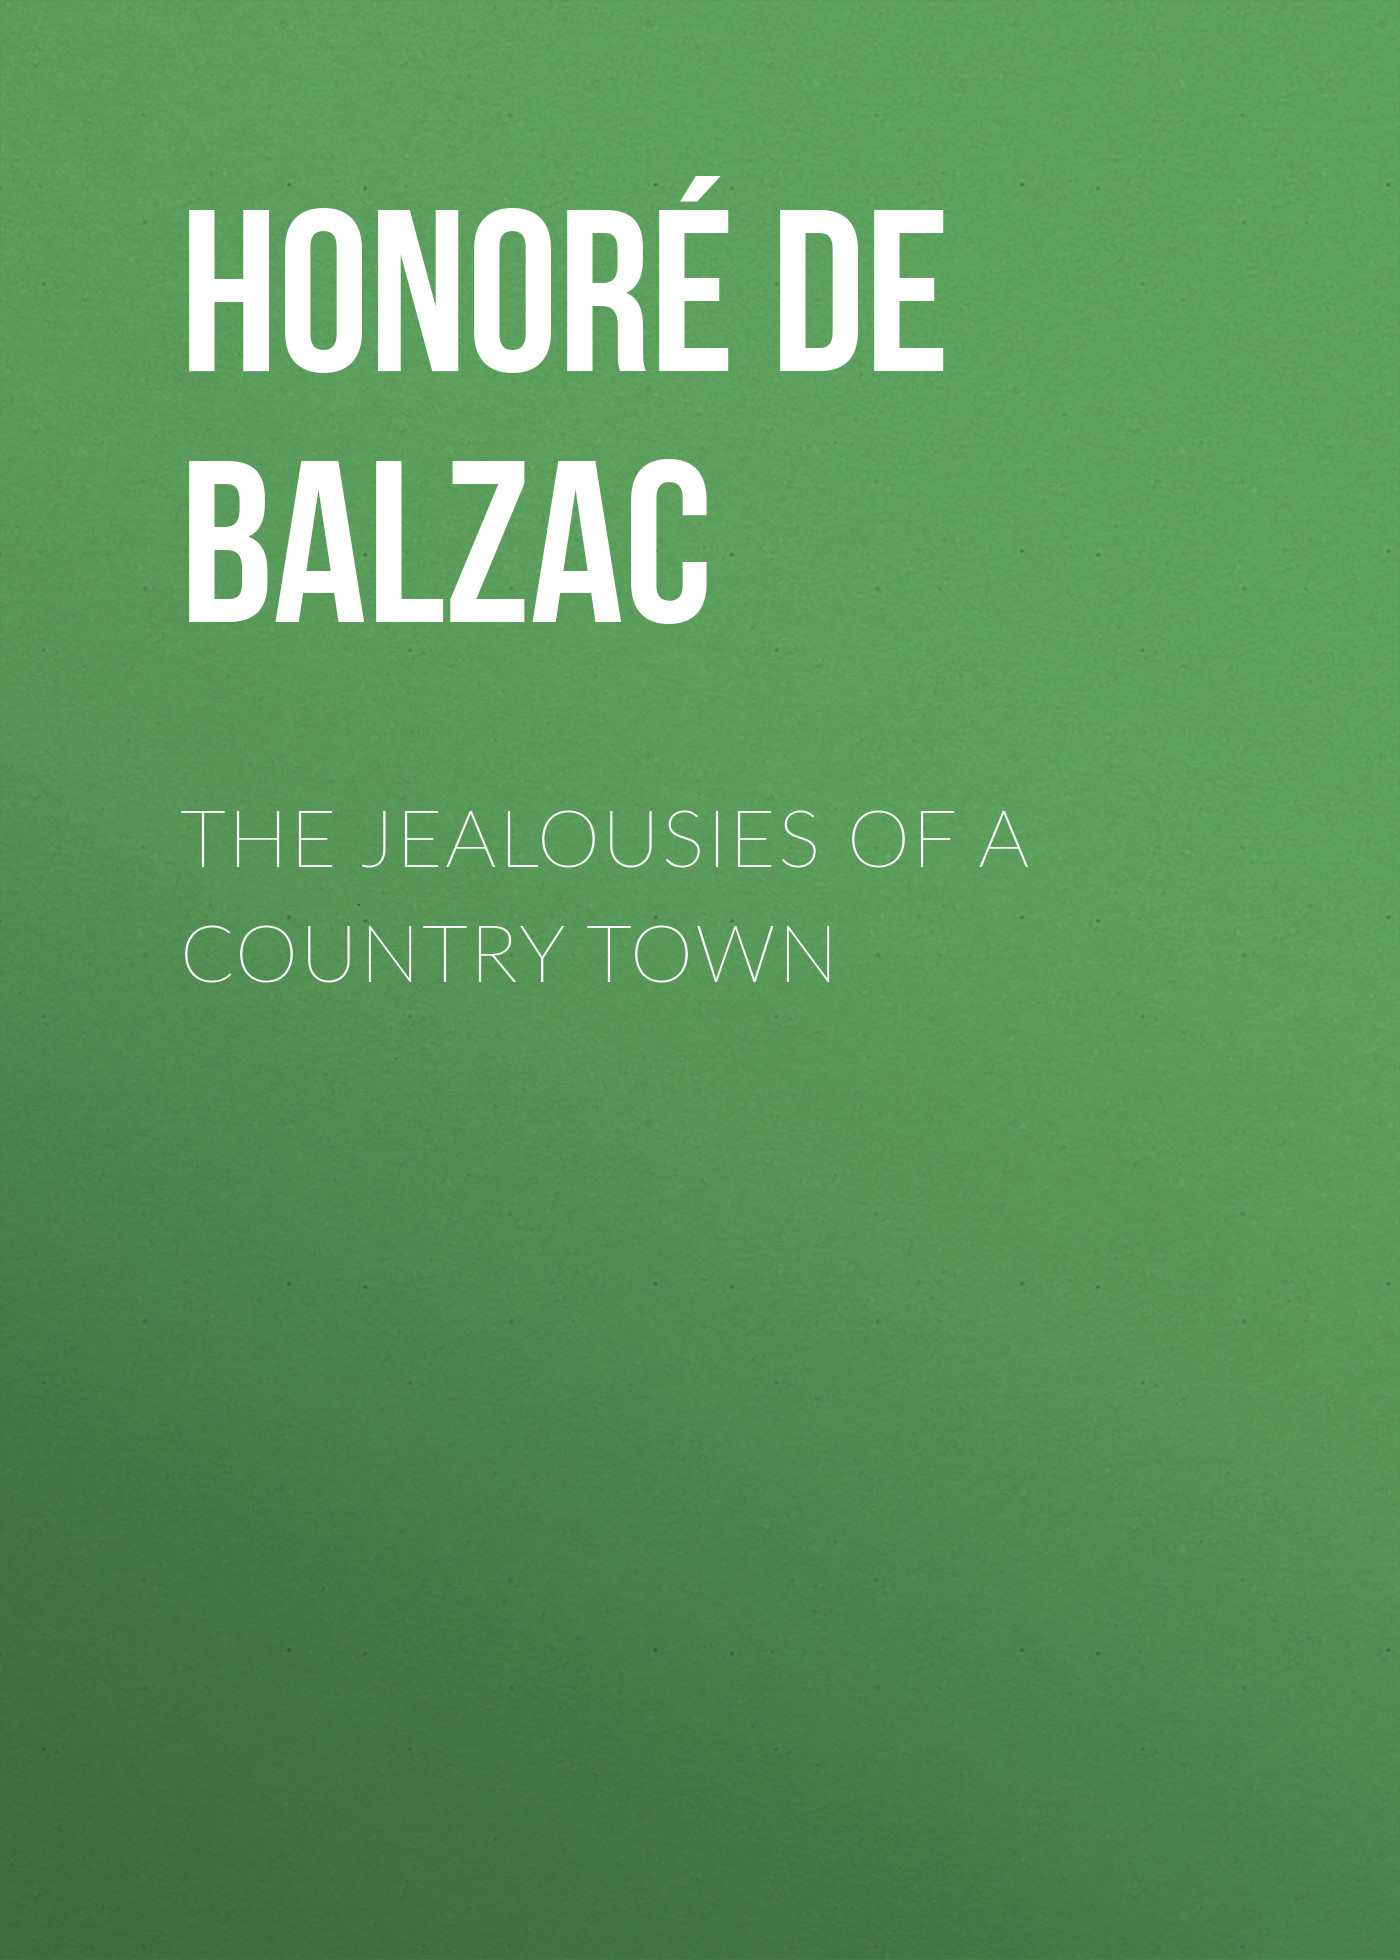 Книга The Jealousies of a Country Town из серии , созданная Honoré Balzac, может относится к жанру Литература 19 века, Зарубежная старинная литература, Зарубежная классика. Стоимость электронной книги The Jealousies of a Country Town с идентификатором 25019203 составляет 0 руб.